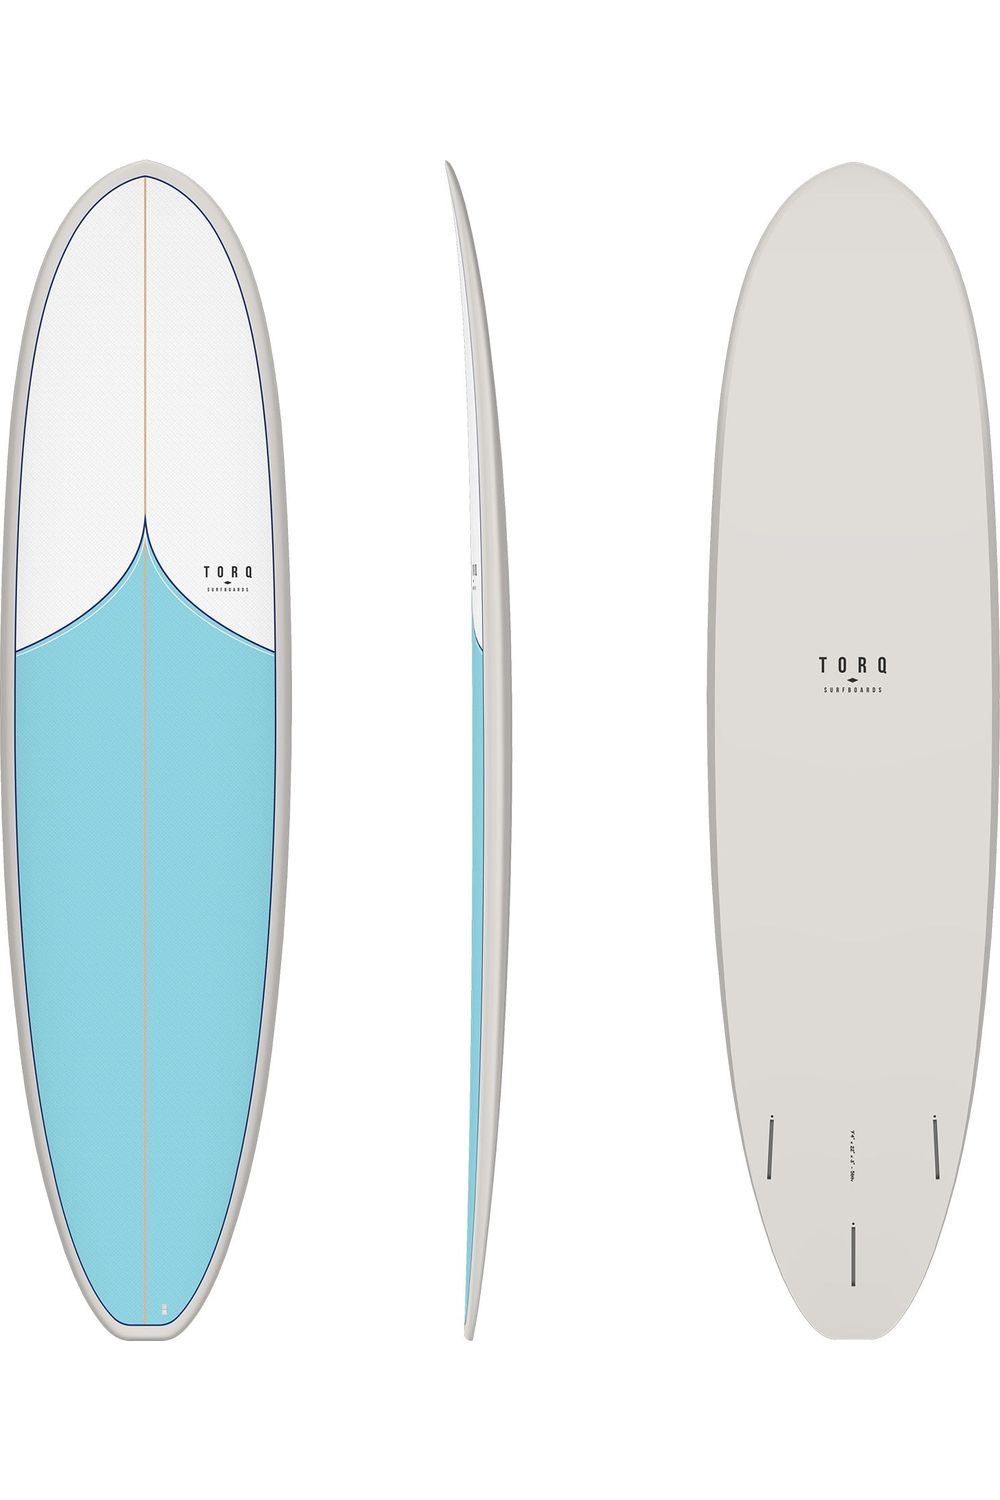 Torq TET Mod Fun V+ Surfboard with Classic Vortex Pattern